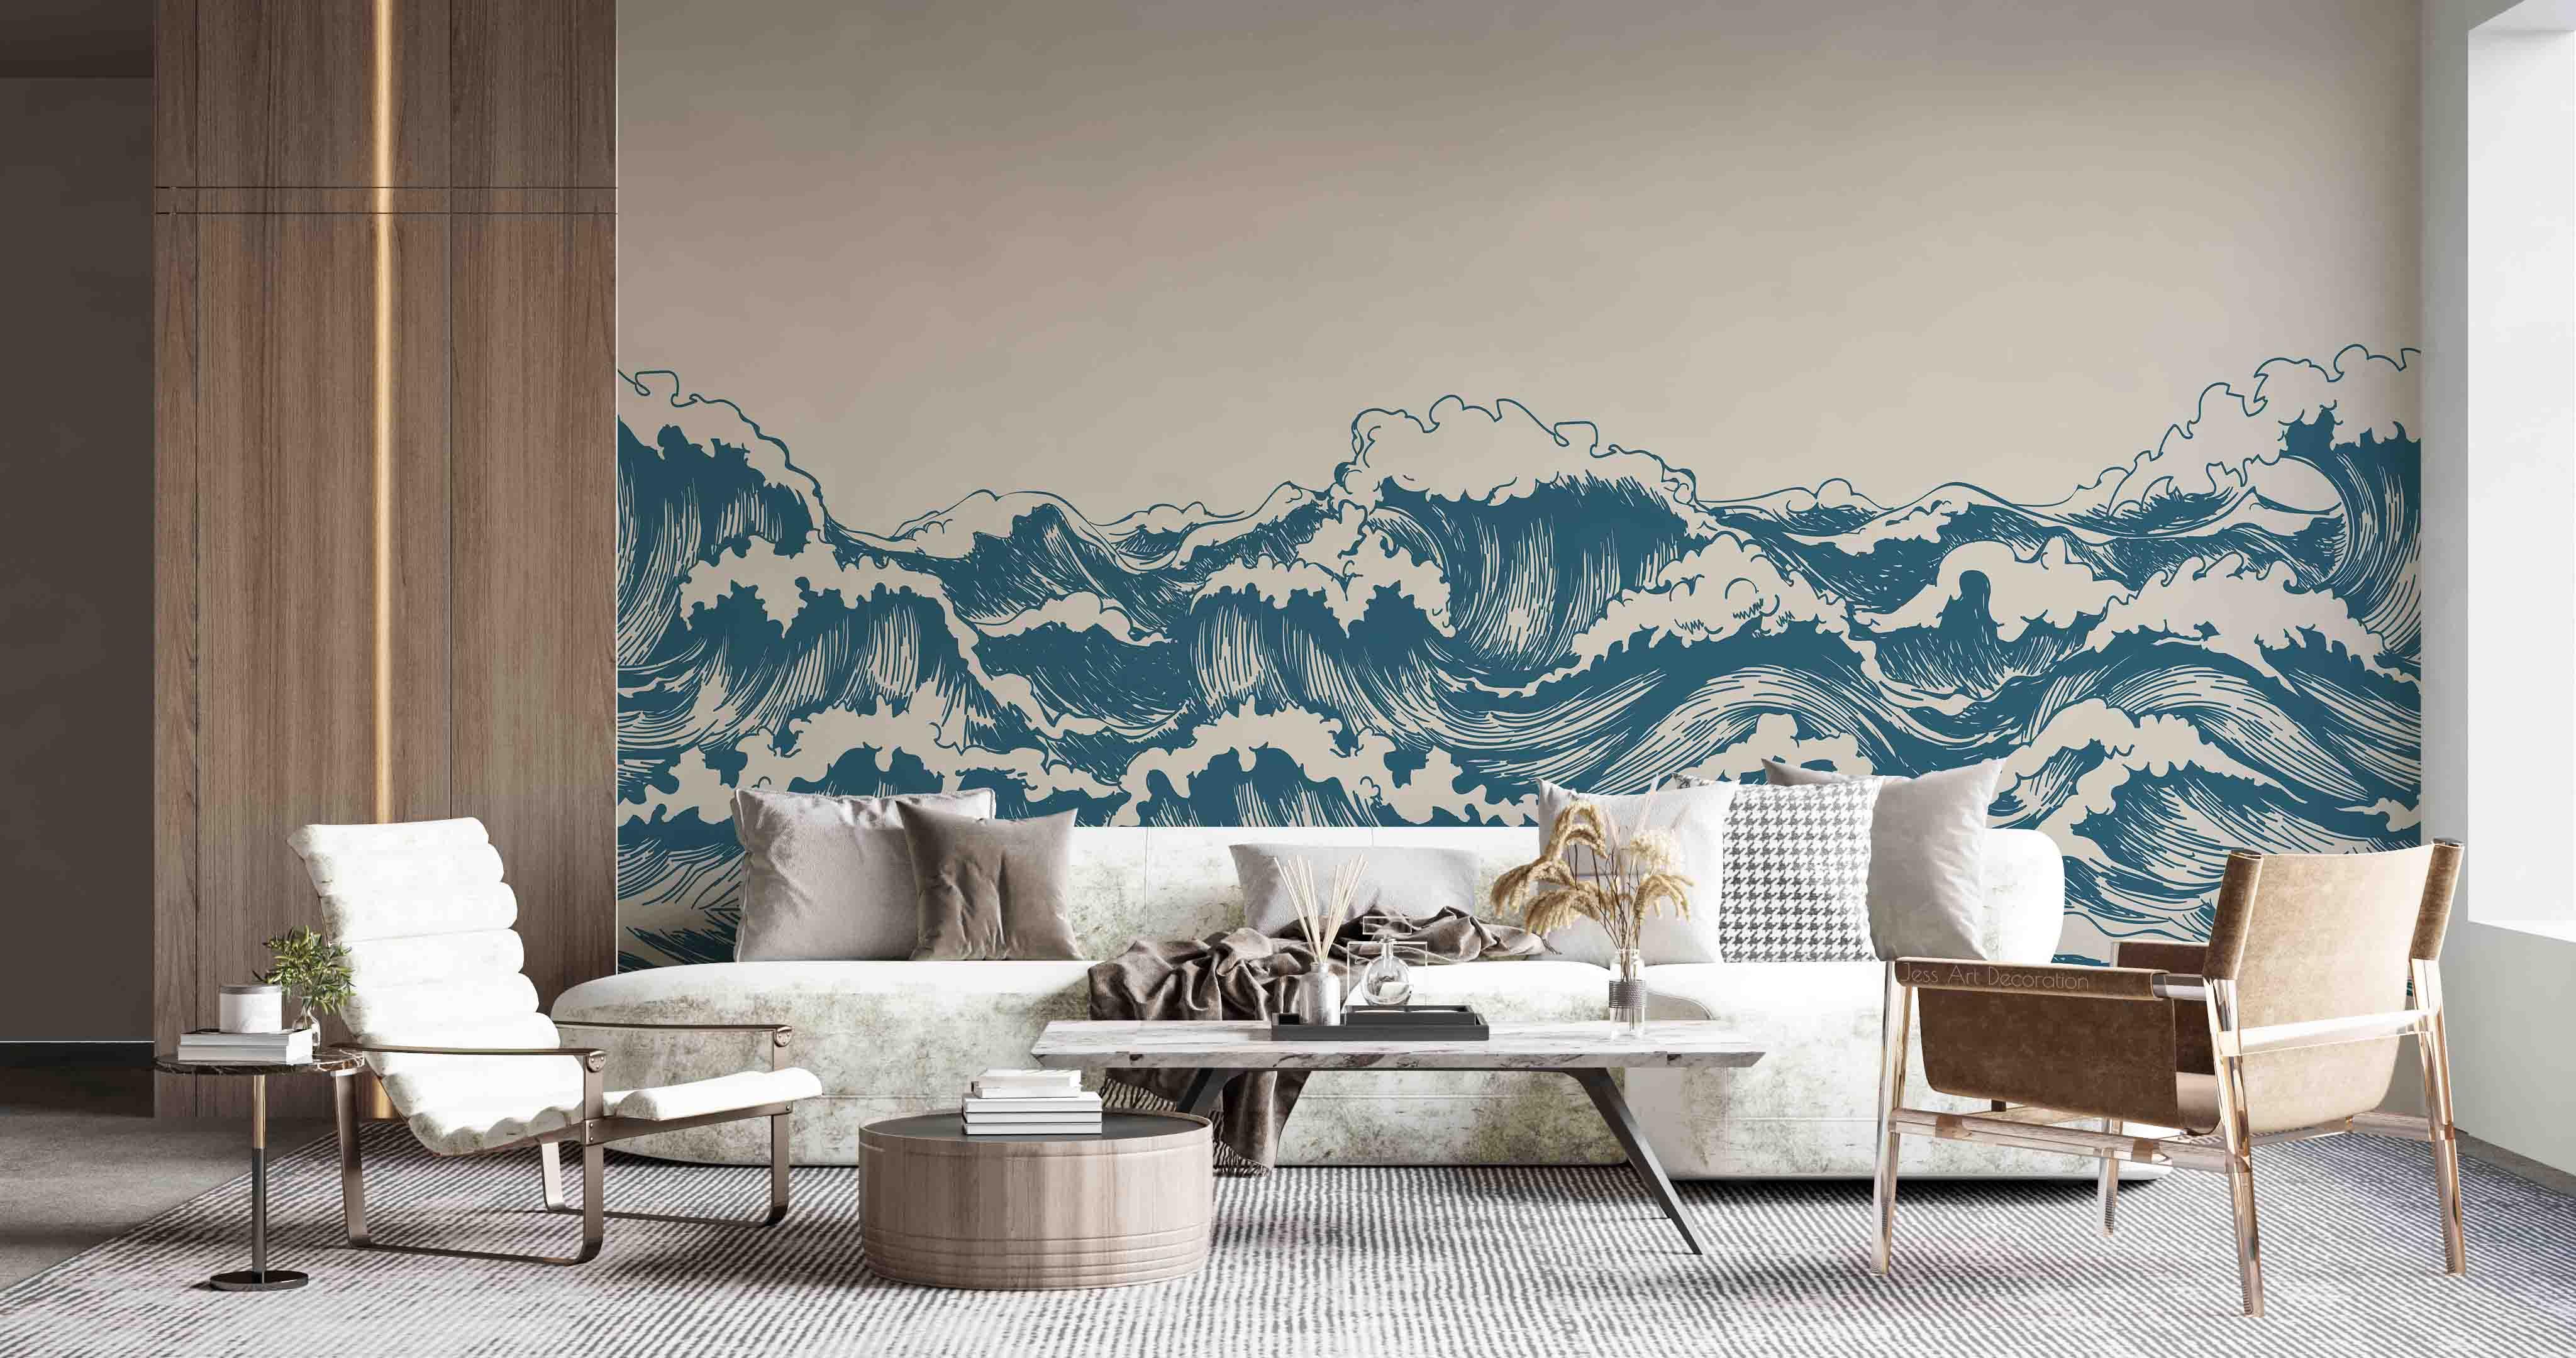 3D Abstract Blue Ocean Waves Wall Mural Wallpaper GD 2727- Jess Art Decoration